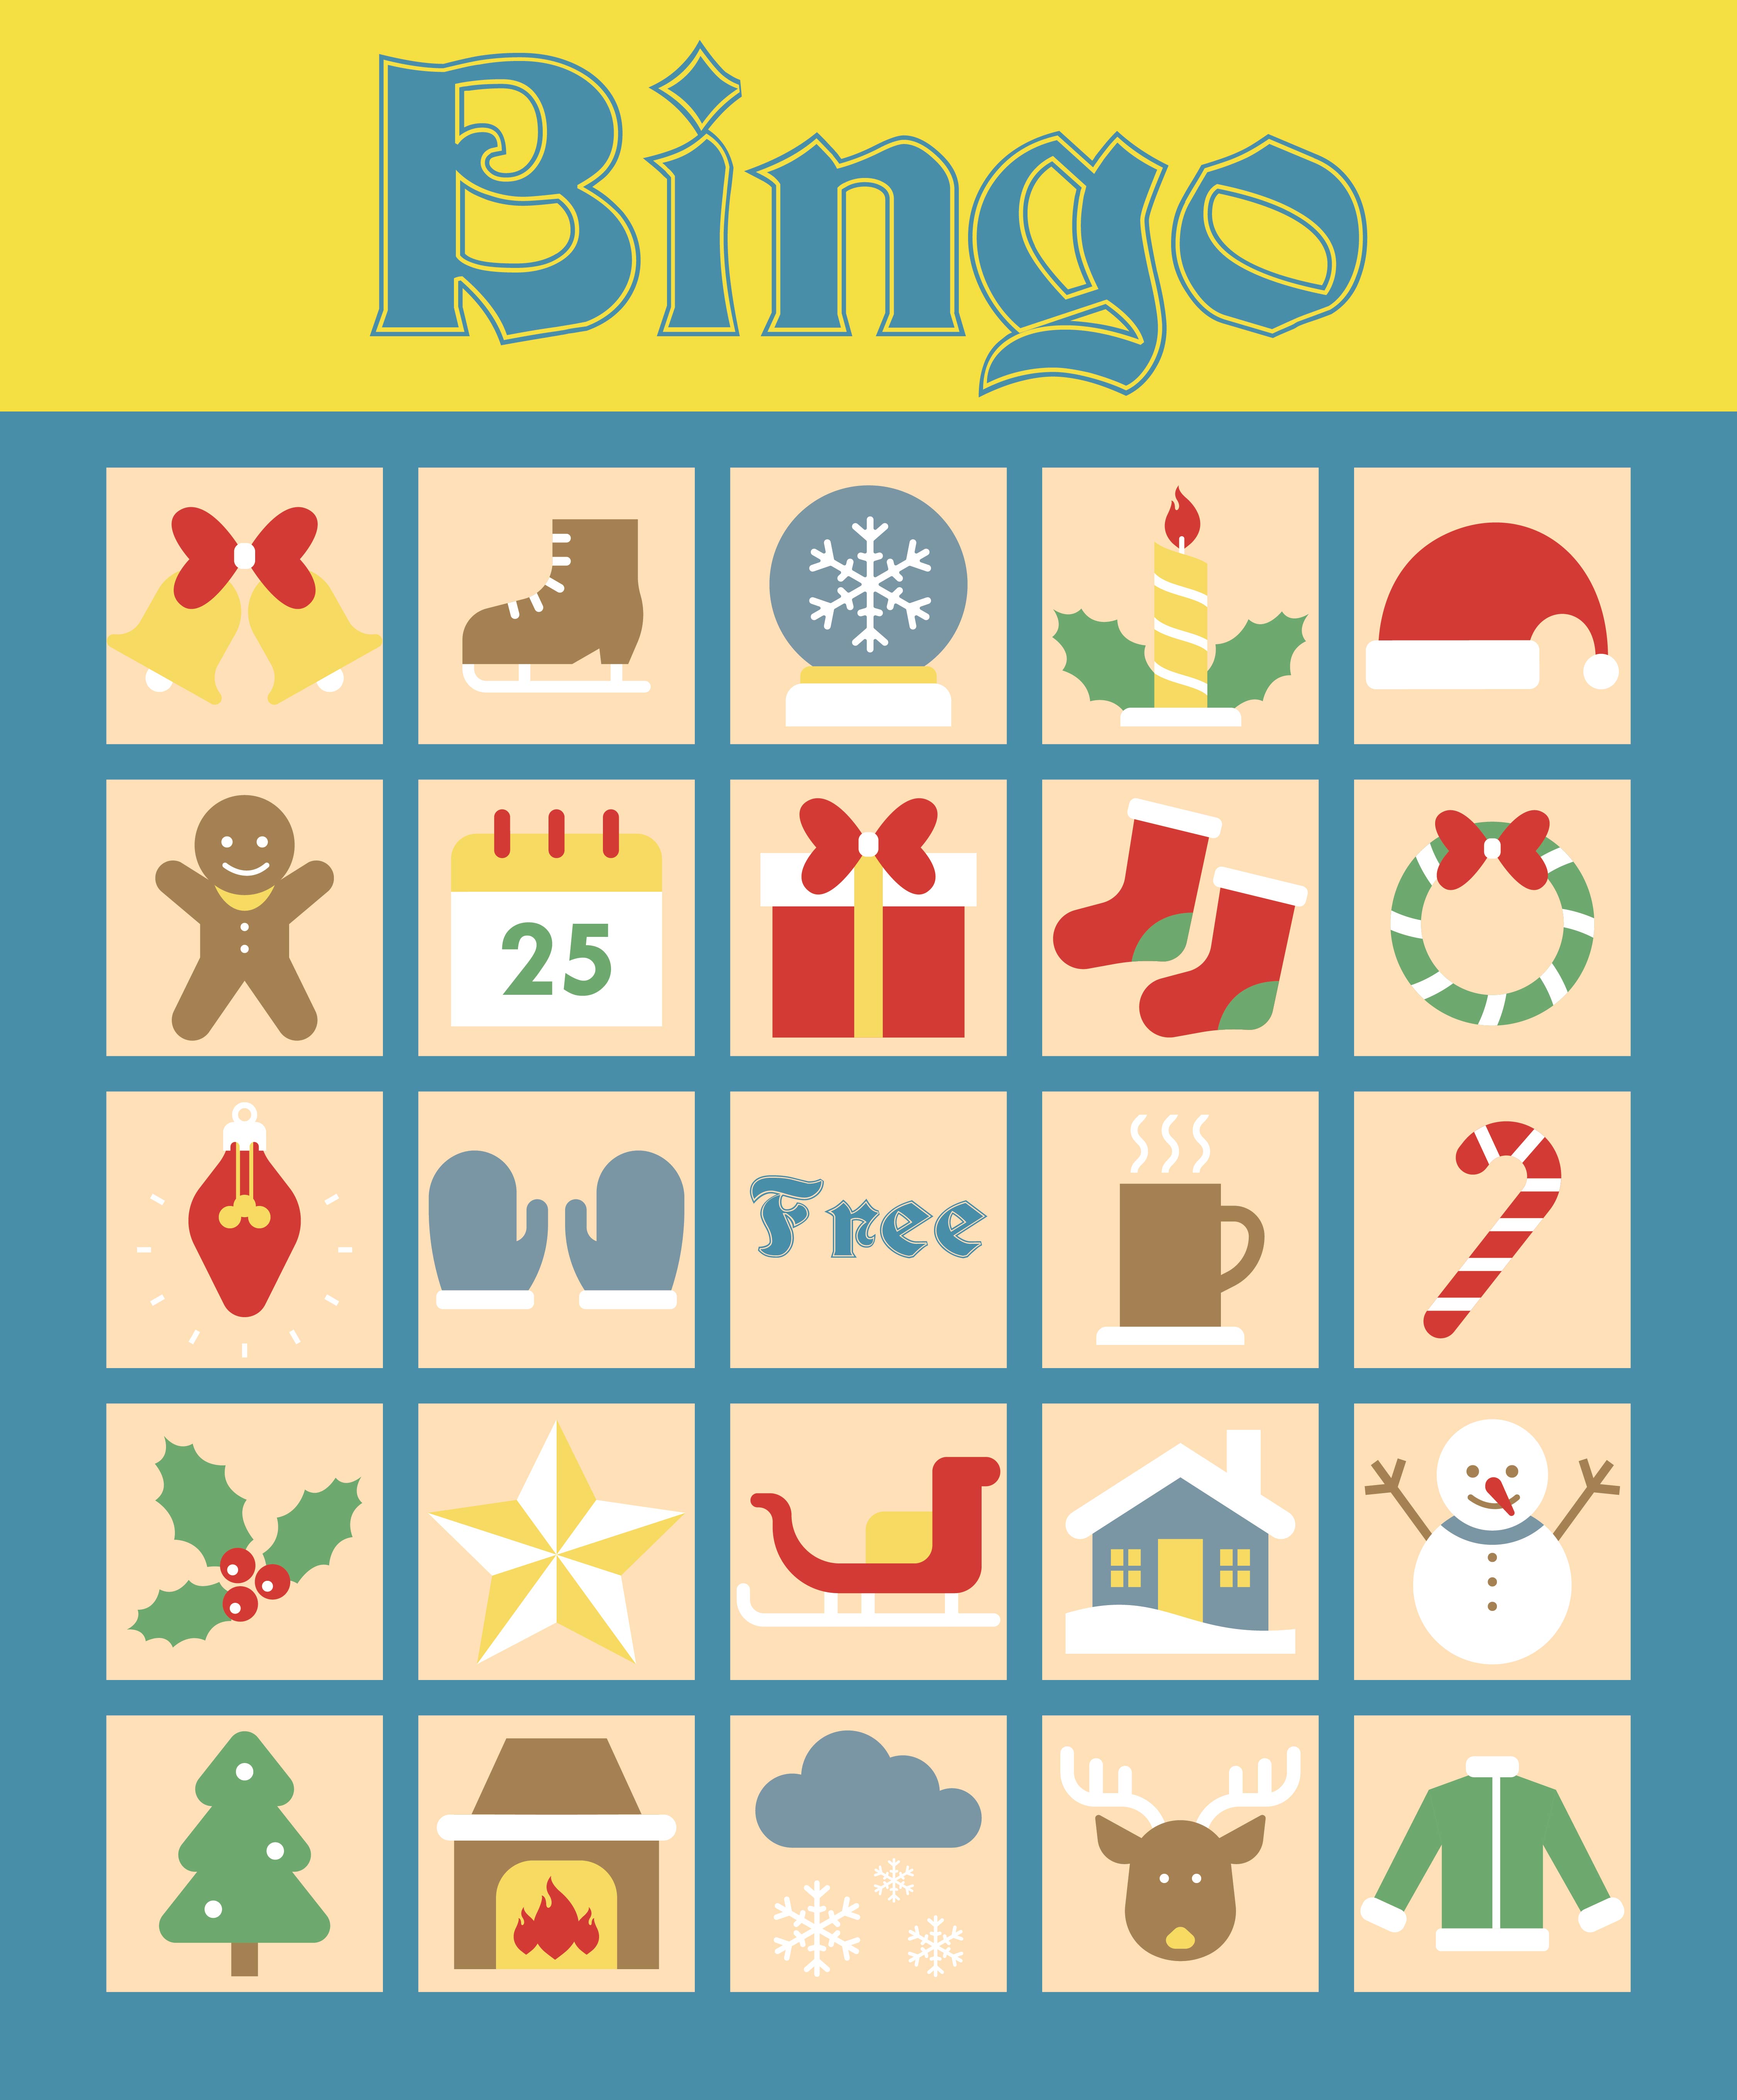 Christian Christmas Bingo Printable Games